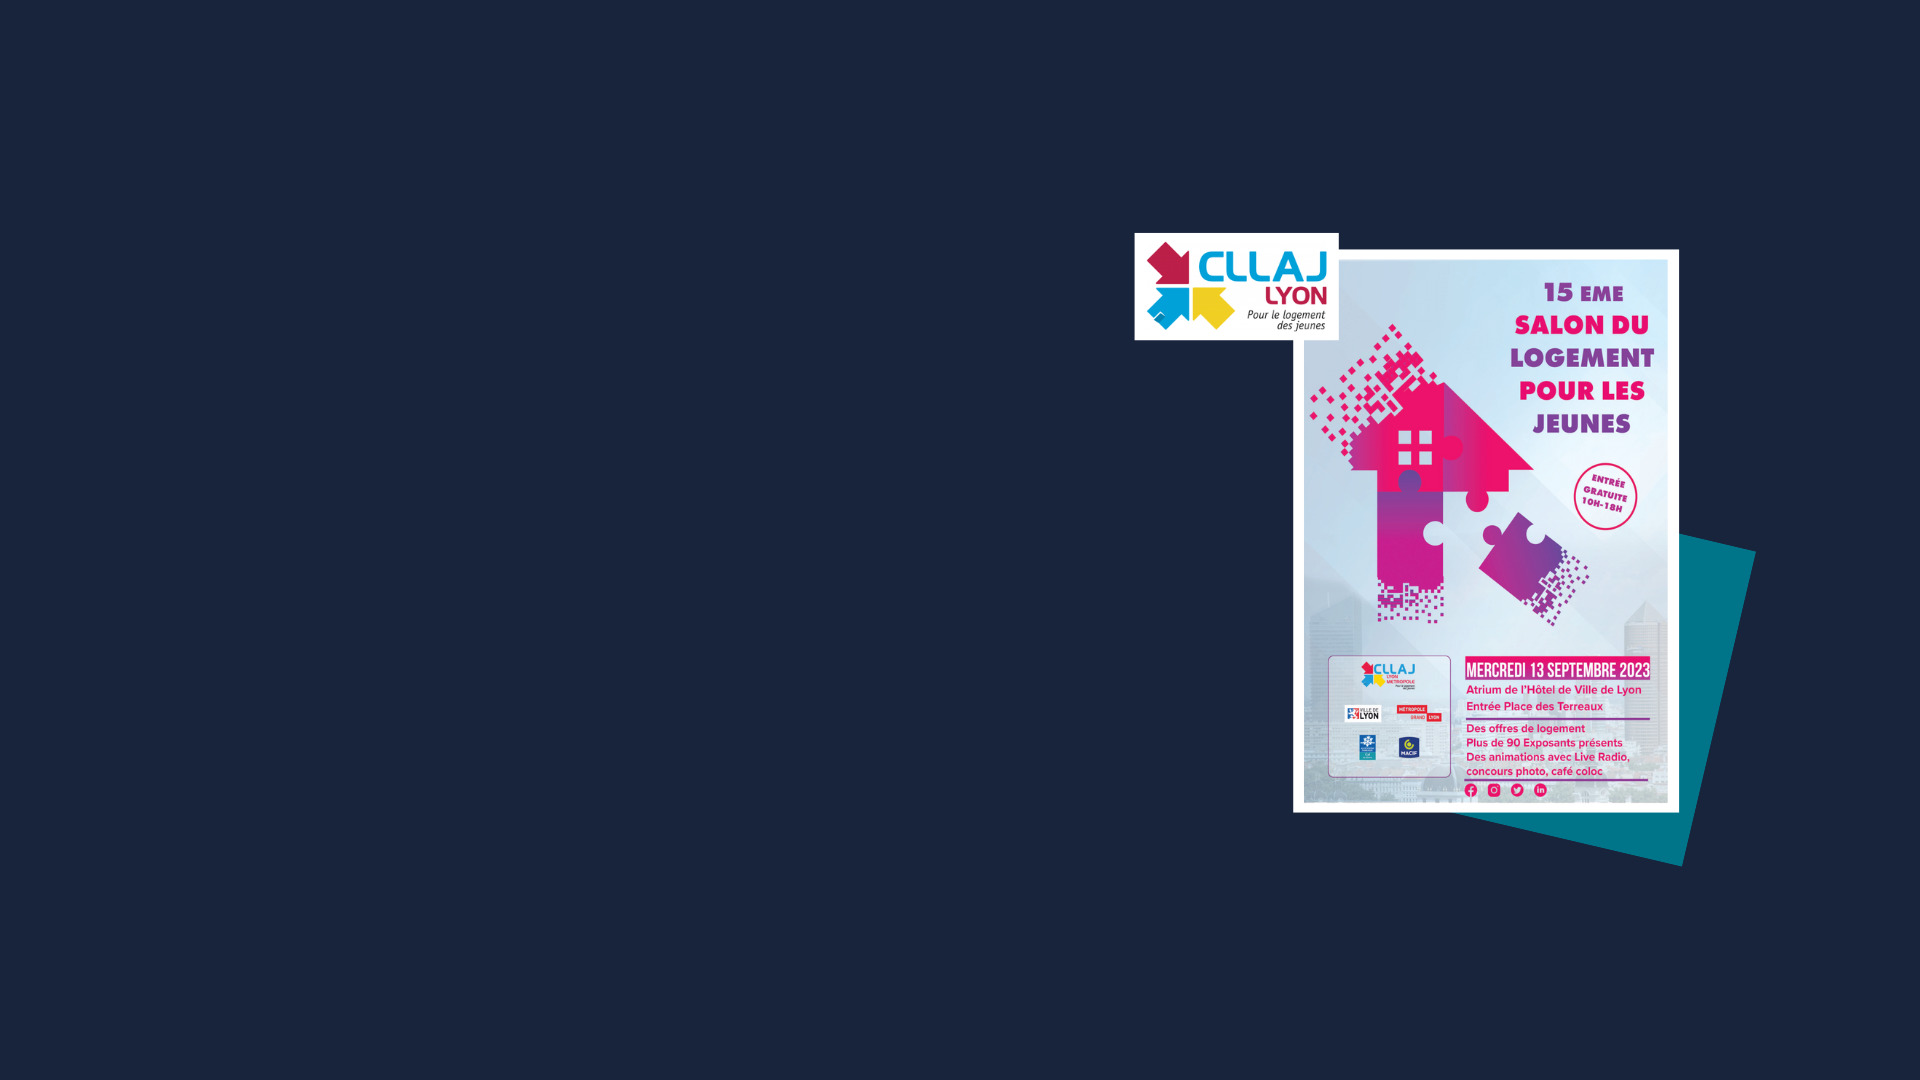 CLLAJ Lyon organise son 15è Salon du Logement pour les Jeunes